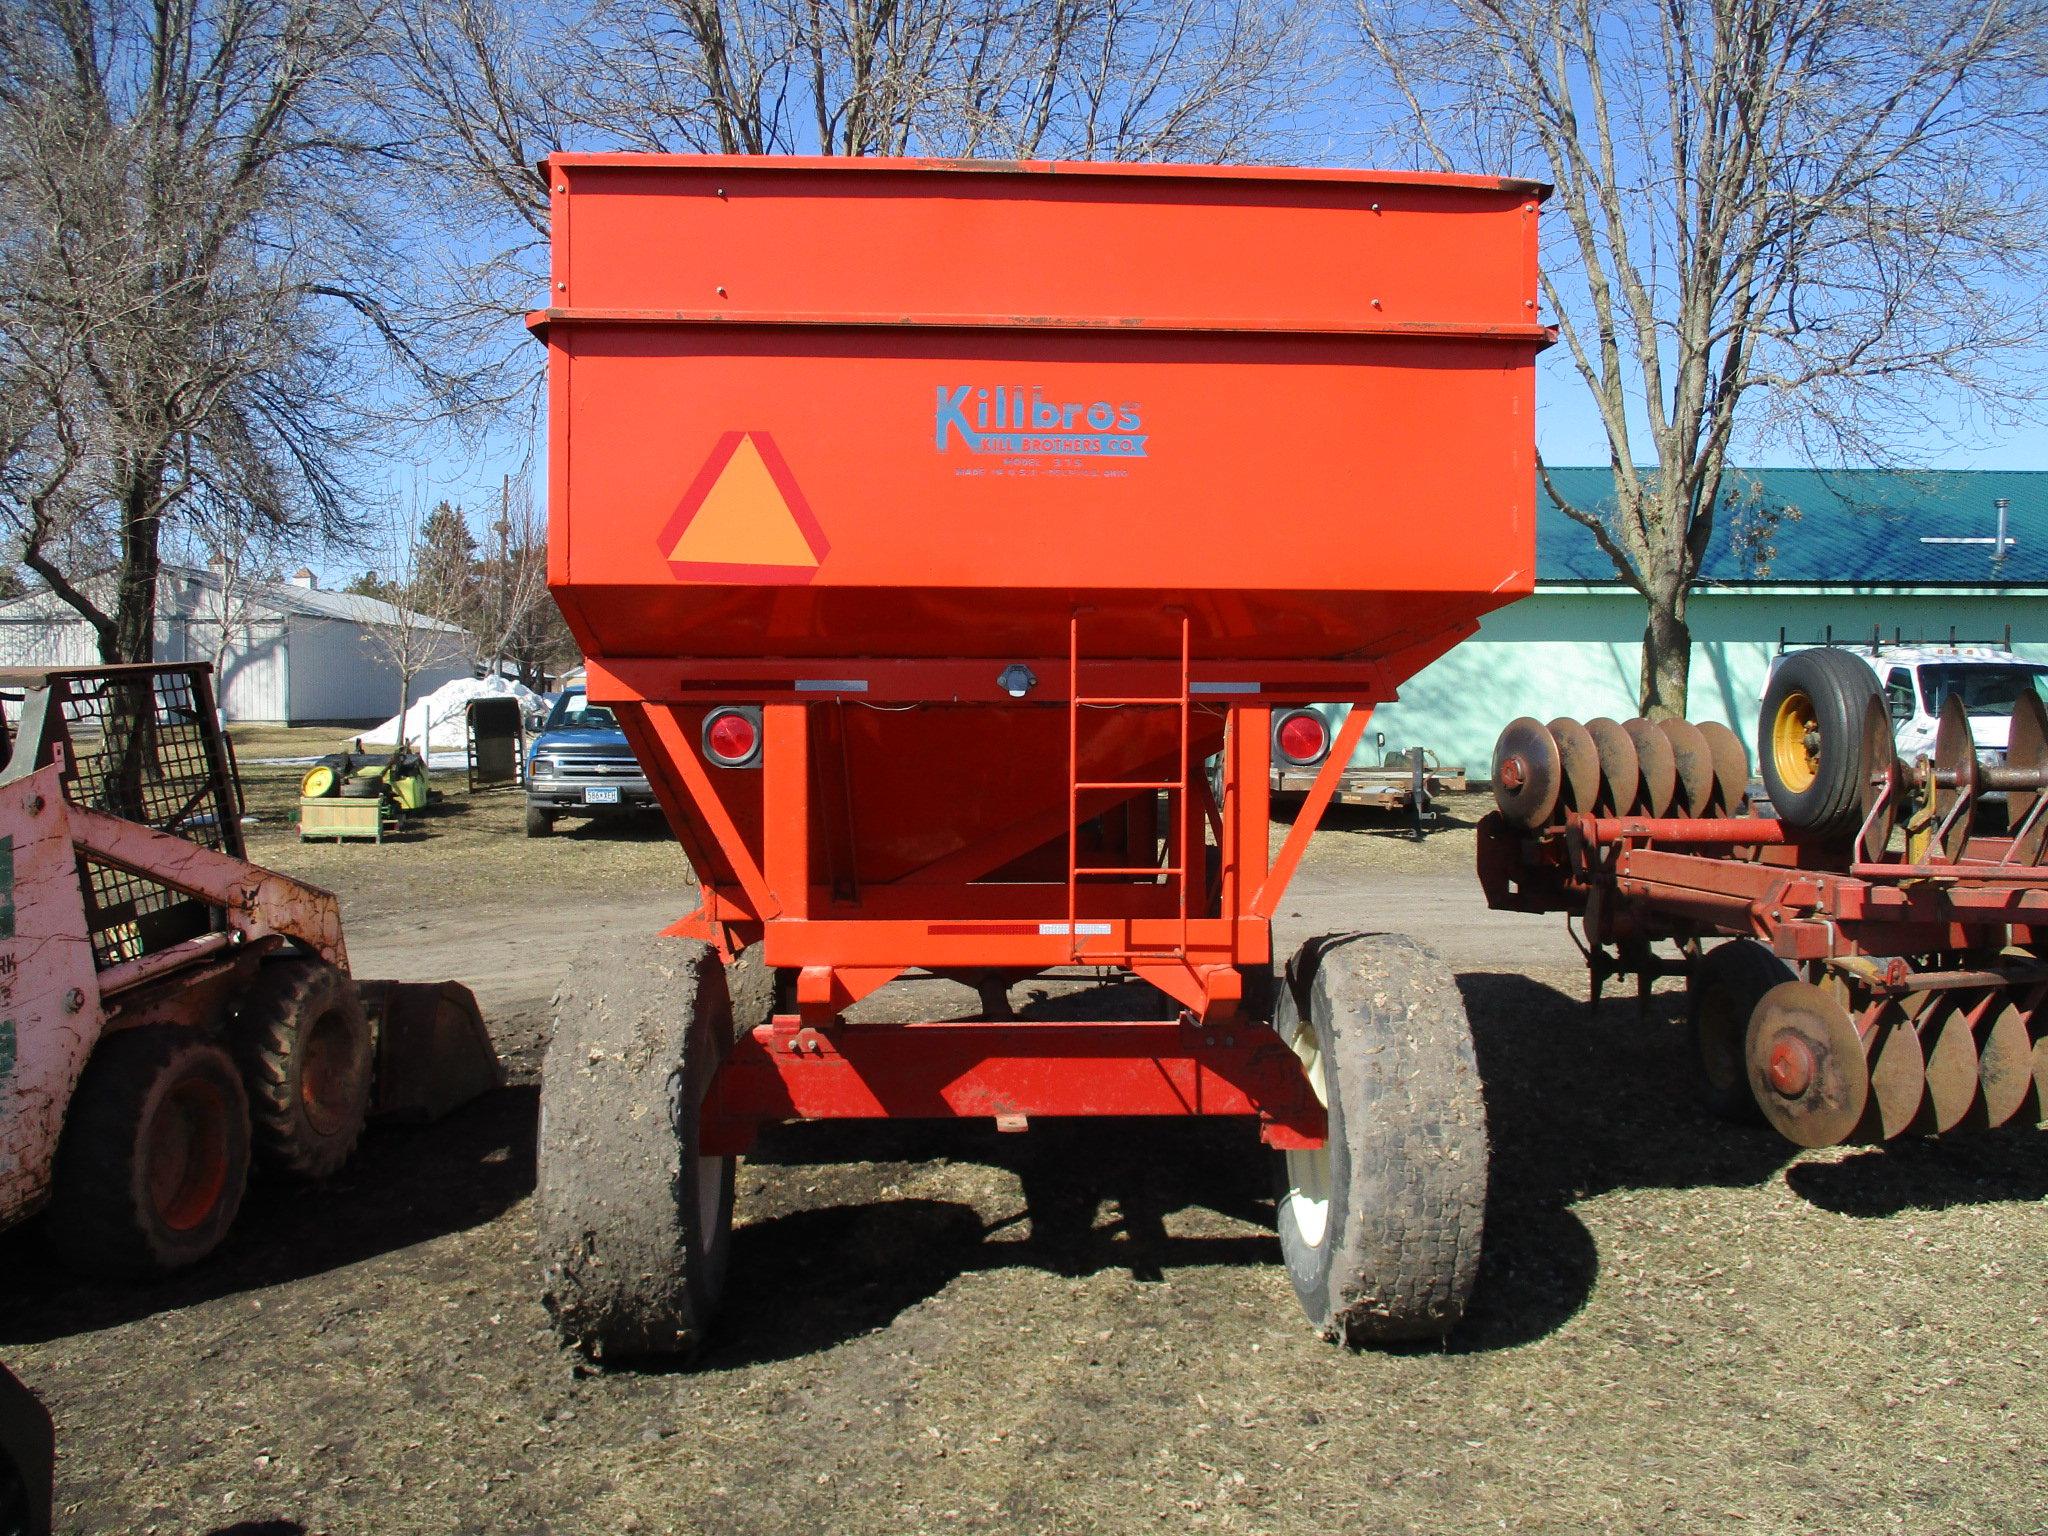 Kilbros 375 gravity wagon, 12 ton gear, 385/65R 22.5 tires